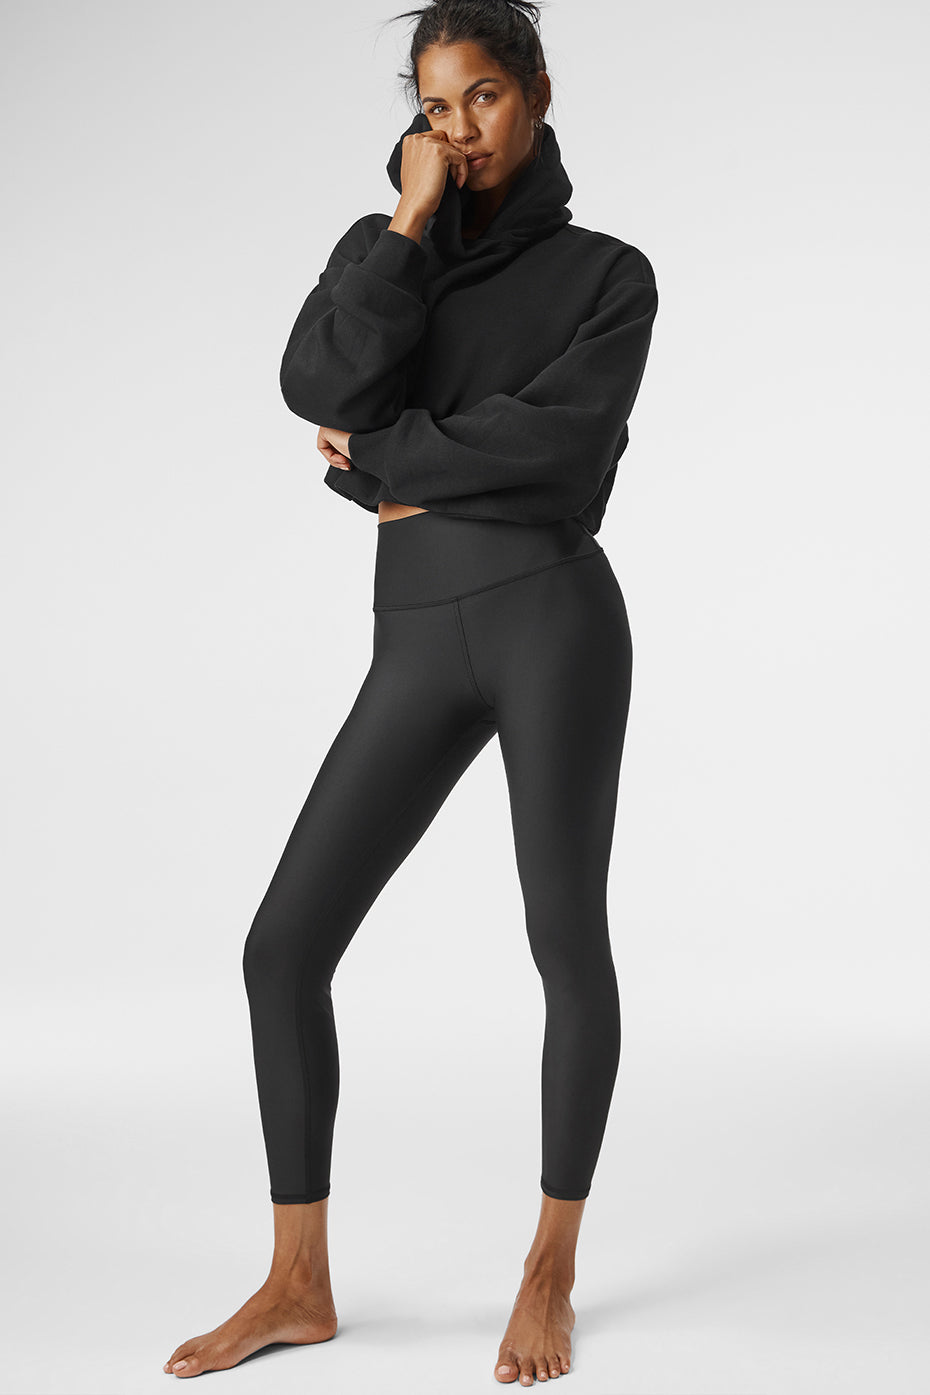 TLF Alena 7/8 Leggings  Squat proof leggings, Tlf apparel, Clothes for  women